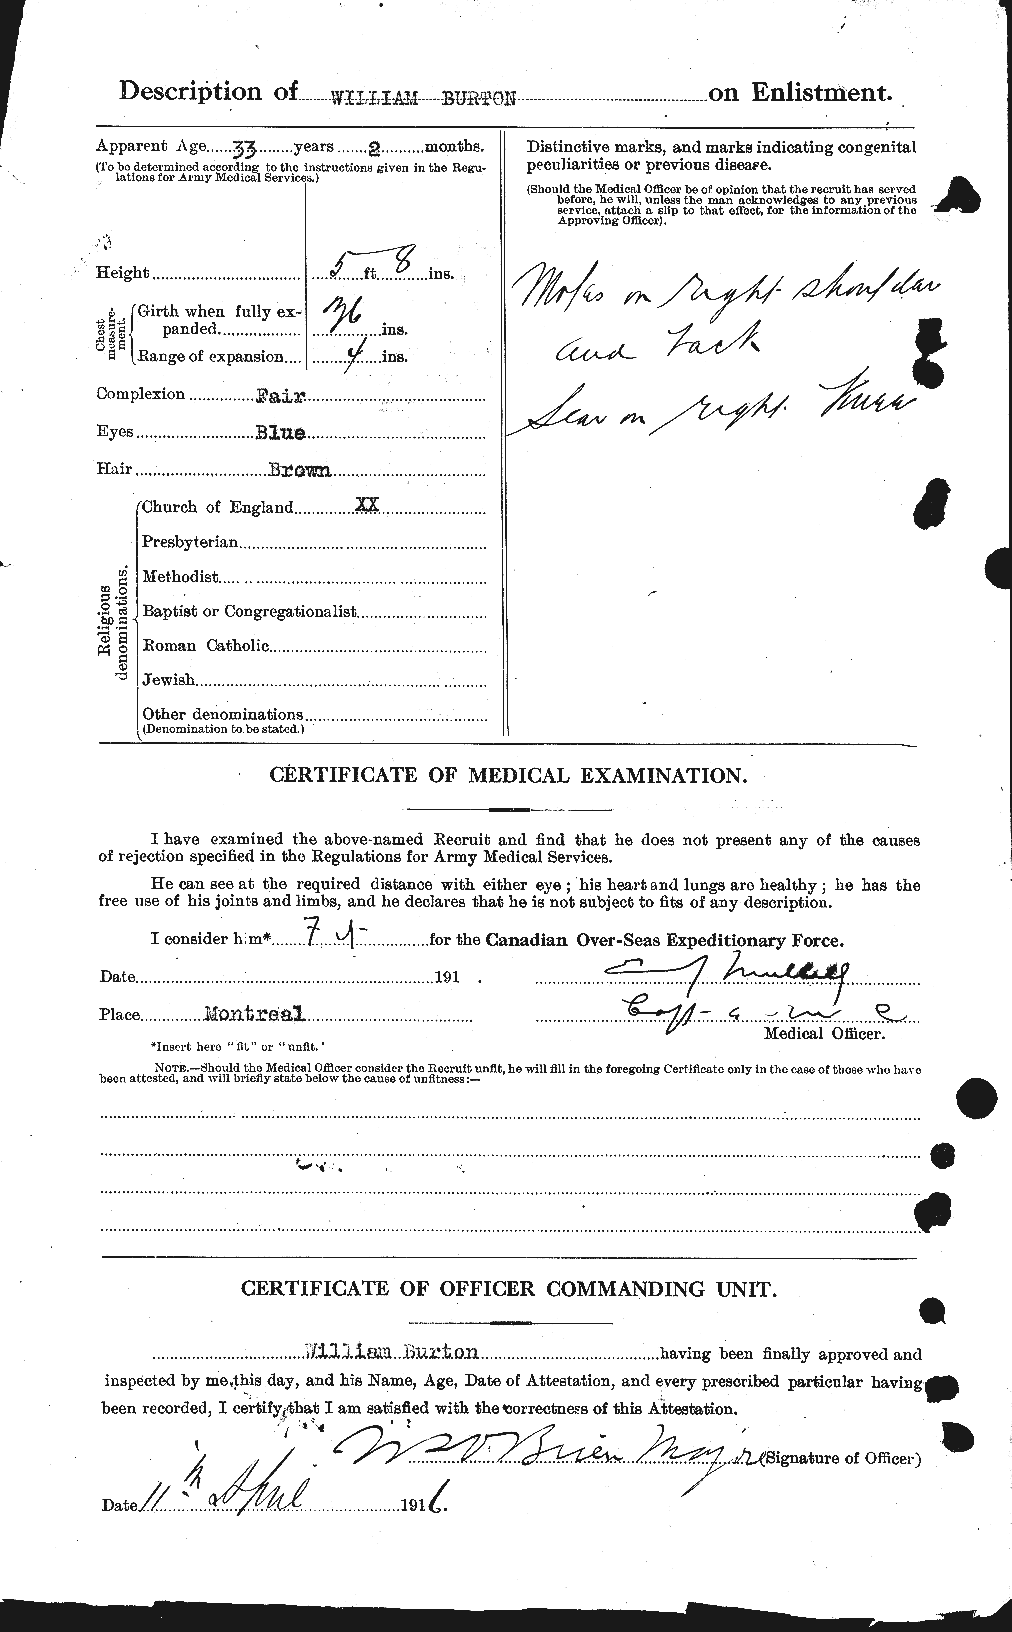 Dossiers du Personnel de la Première Guerre mondiale - CEC 272755b